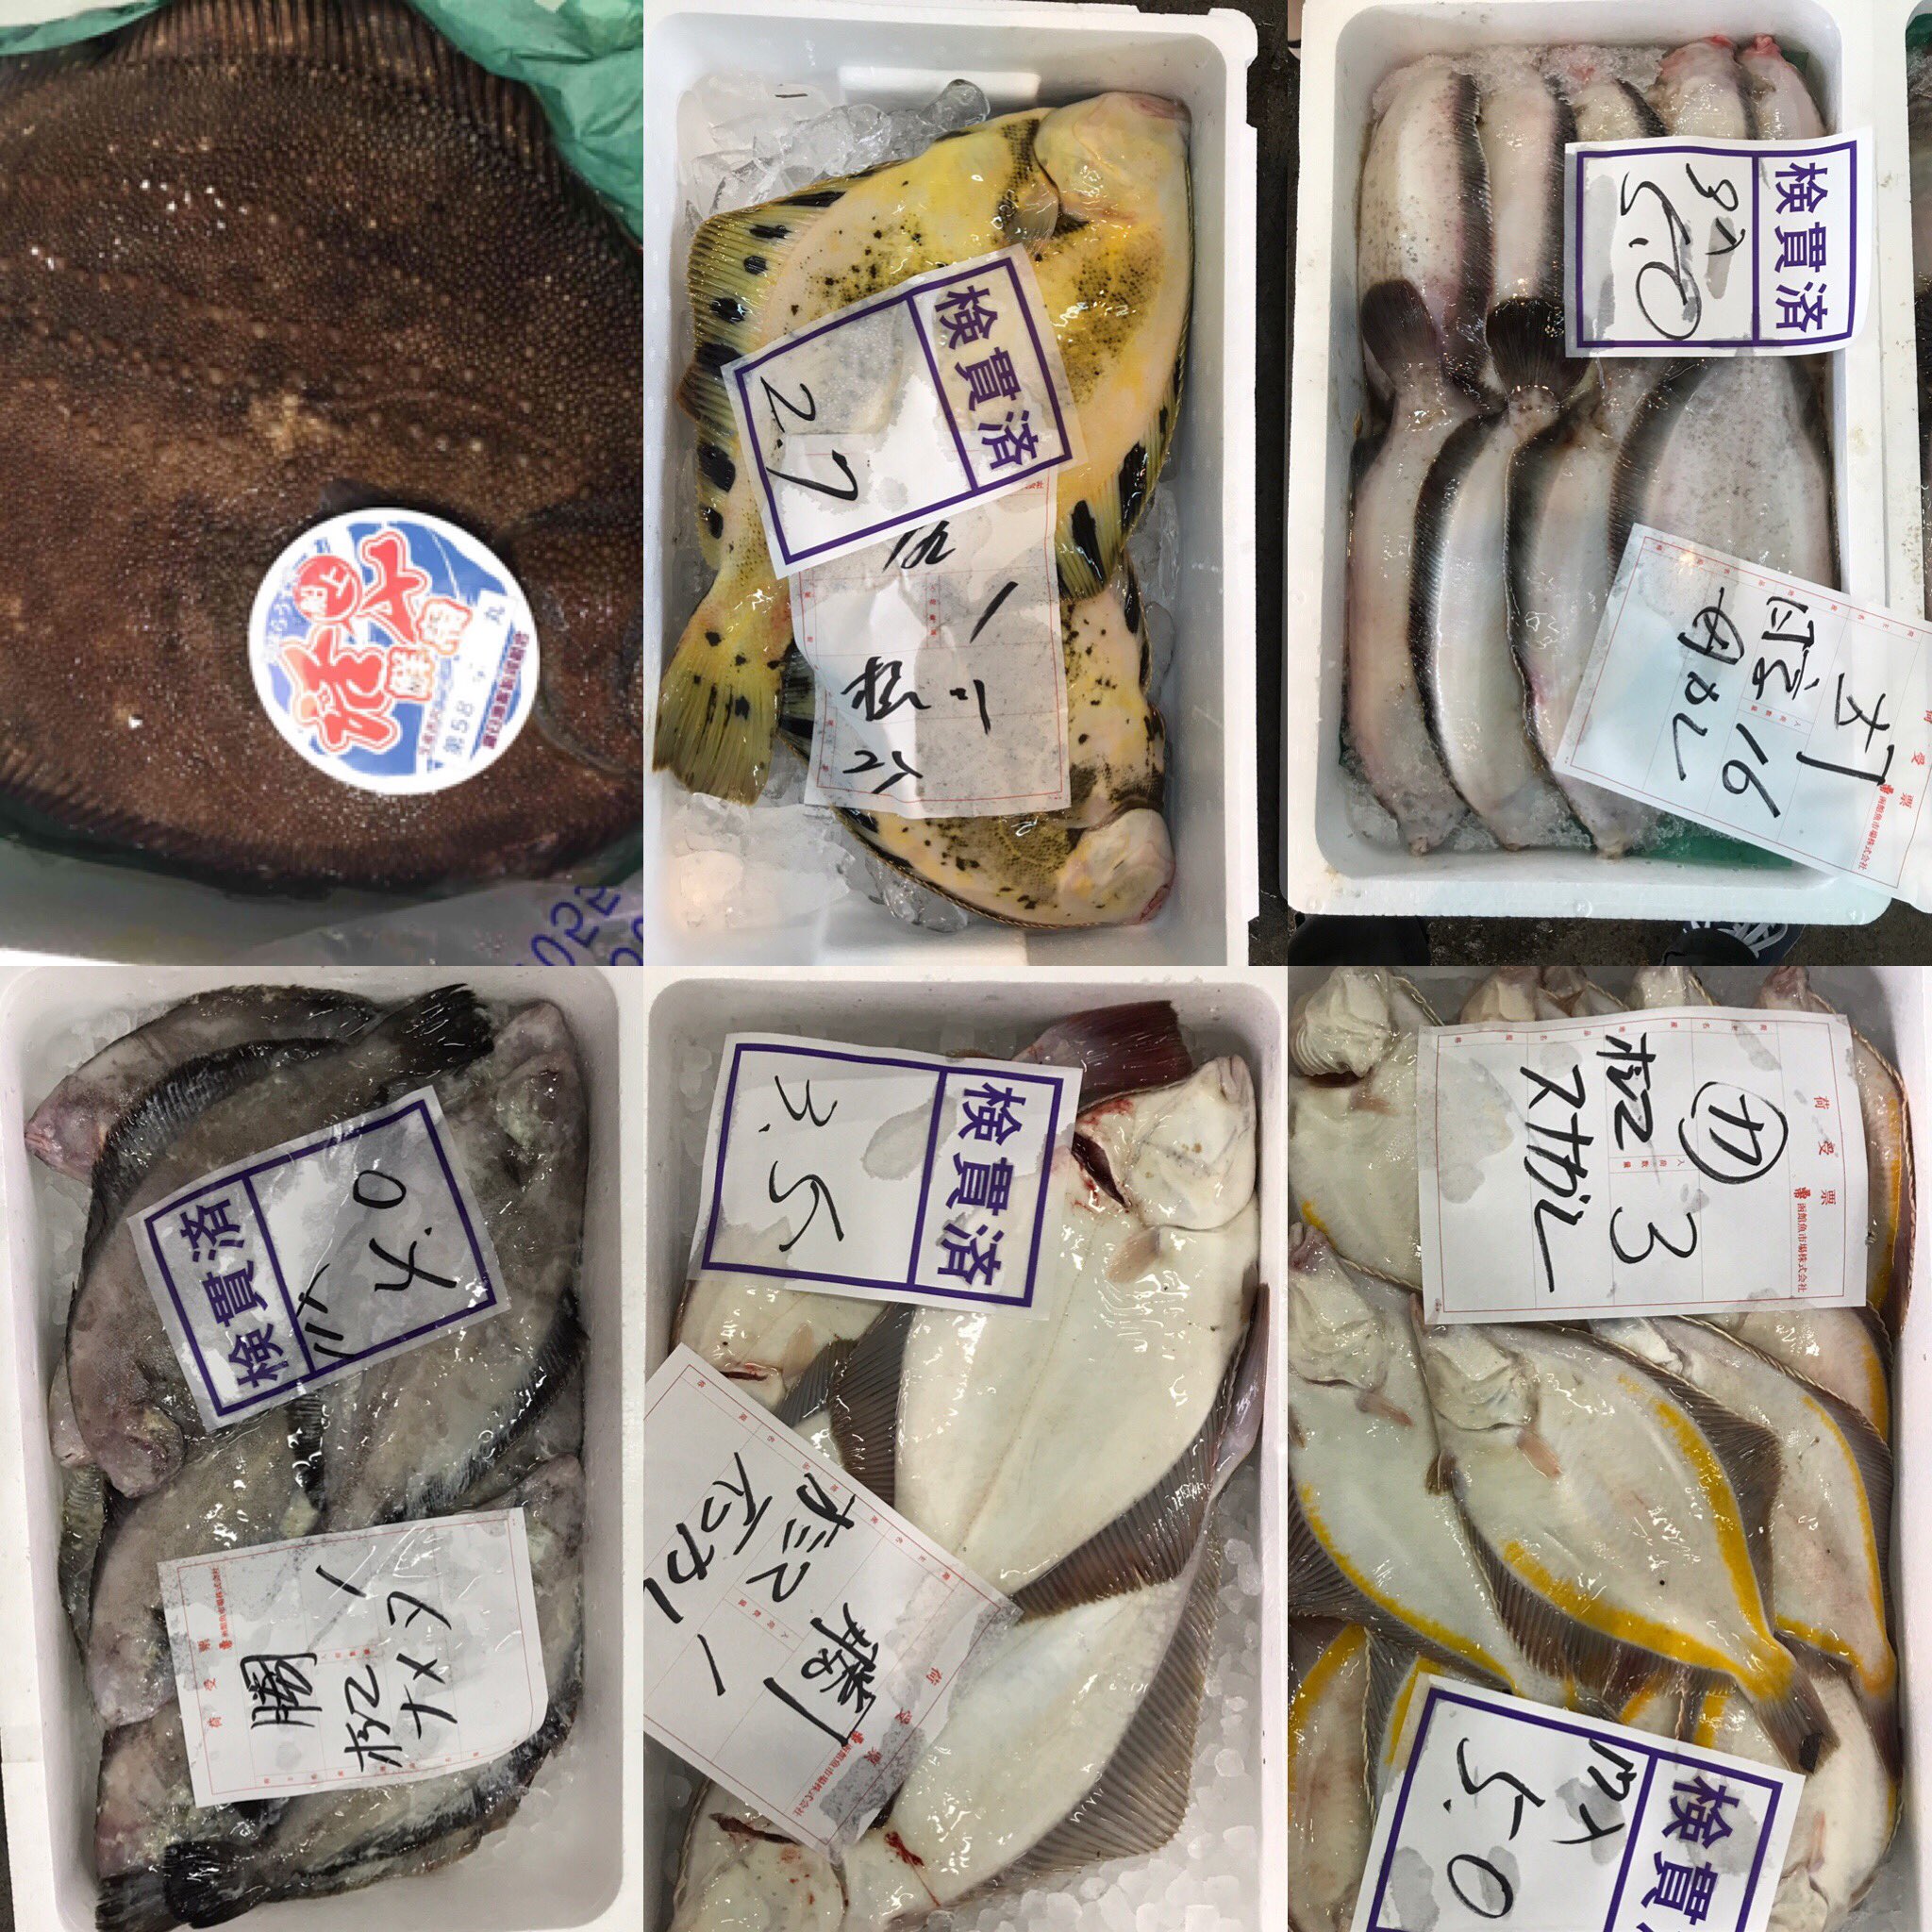 水産関連の情報をツイートします 北海道の函館市水産物地方卸売市場の魚たち サメガレイ スナガレイ アサバガレイ クロガレイ イシガレイ マツカワガレイ ババガレイ ナメタガレイ カラスガレイ ギンガレイ これからカレイを全種類写真におさめ